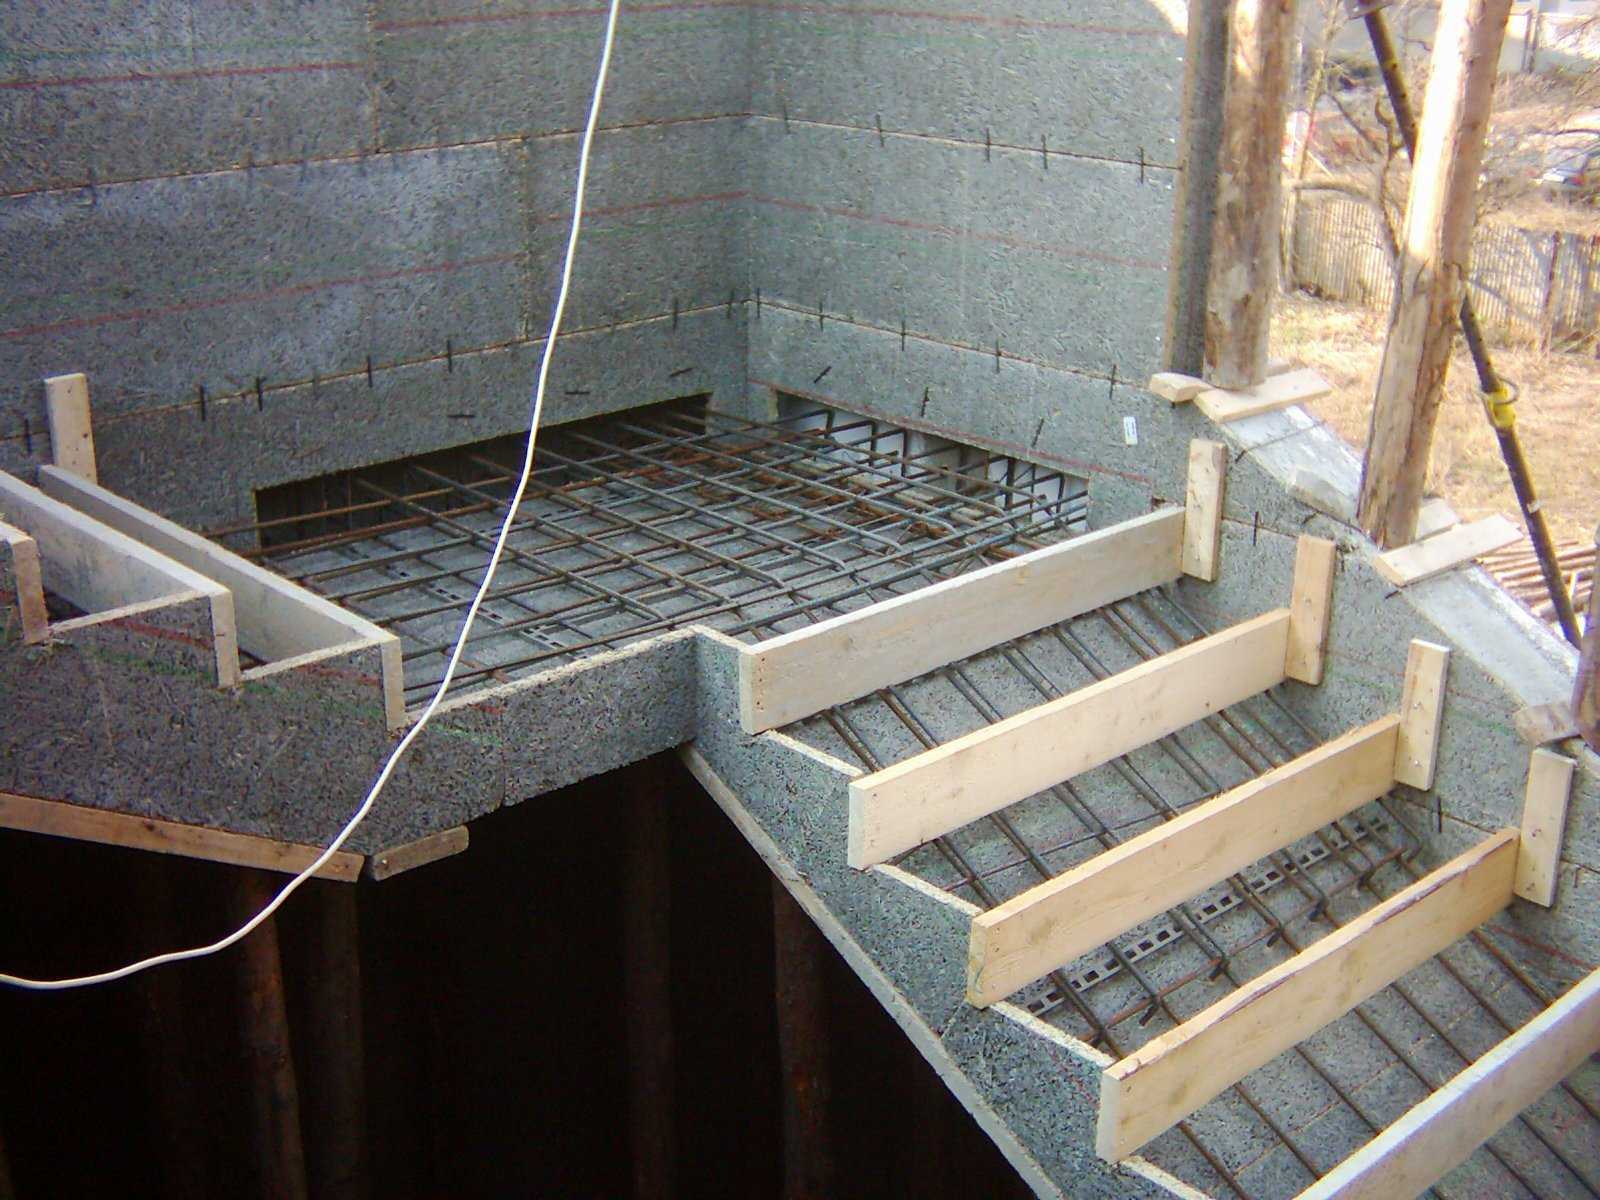 Строительство крыльца своими руками: выбор материала для крыльца, этапы строительства бетонного, кирпичного и деревянного крыльца.